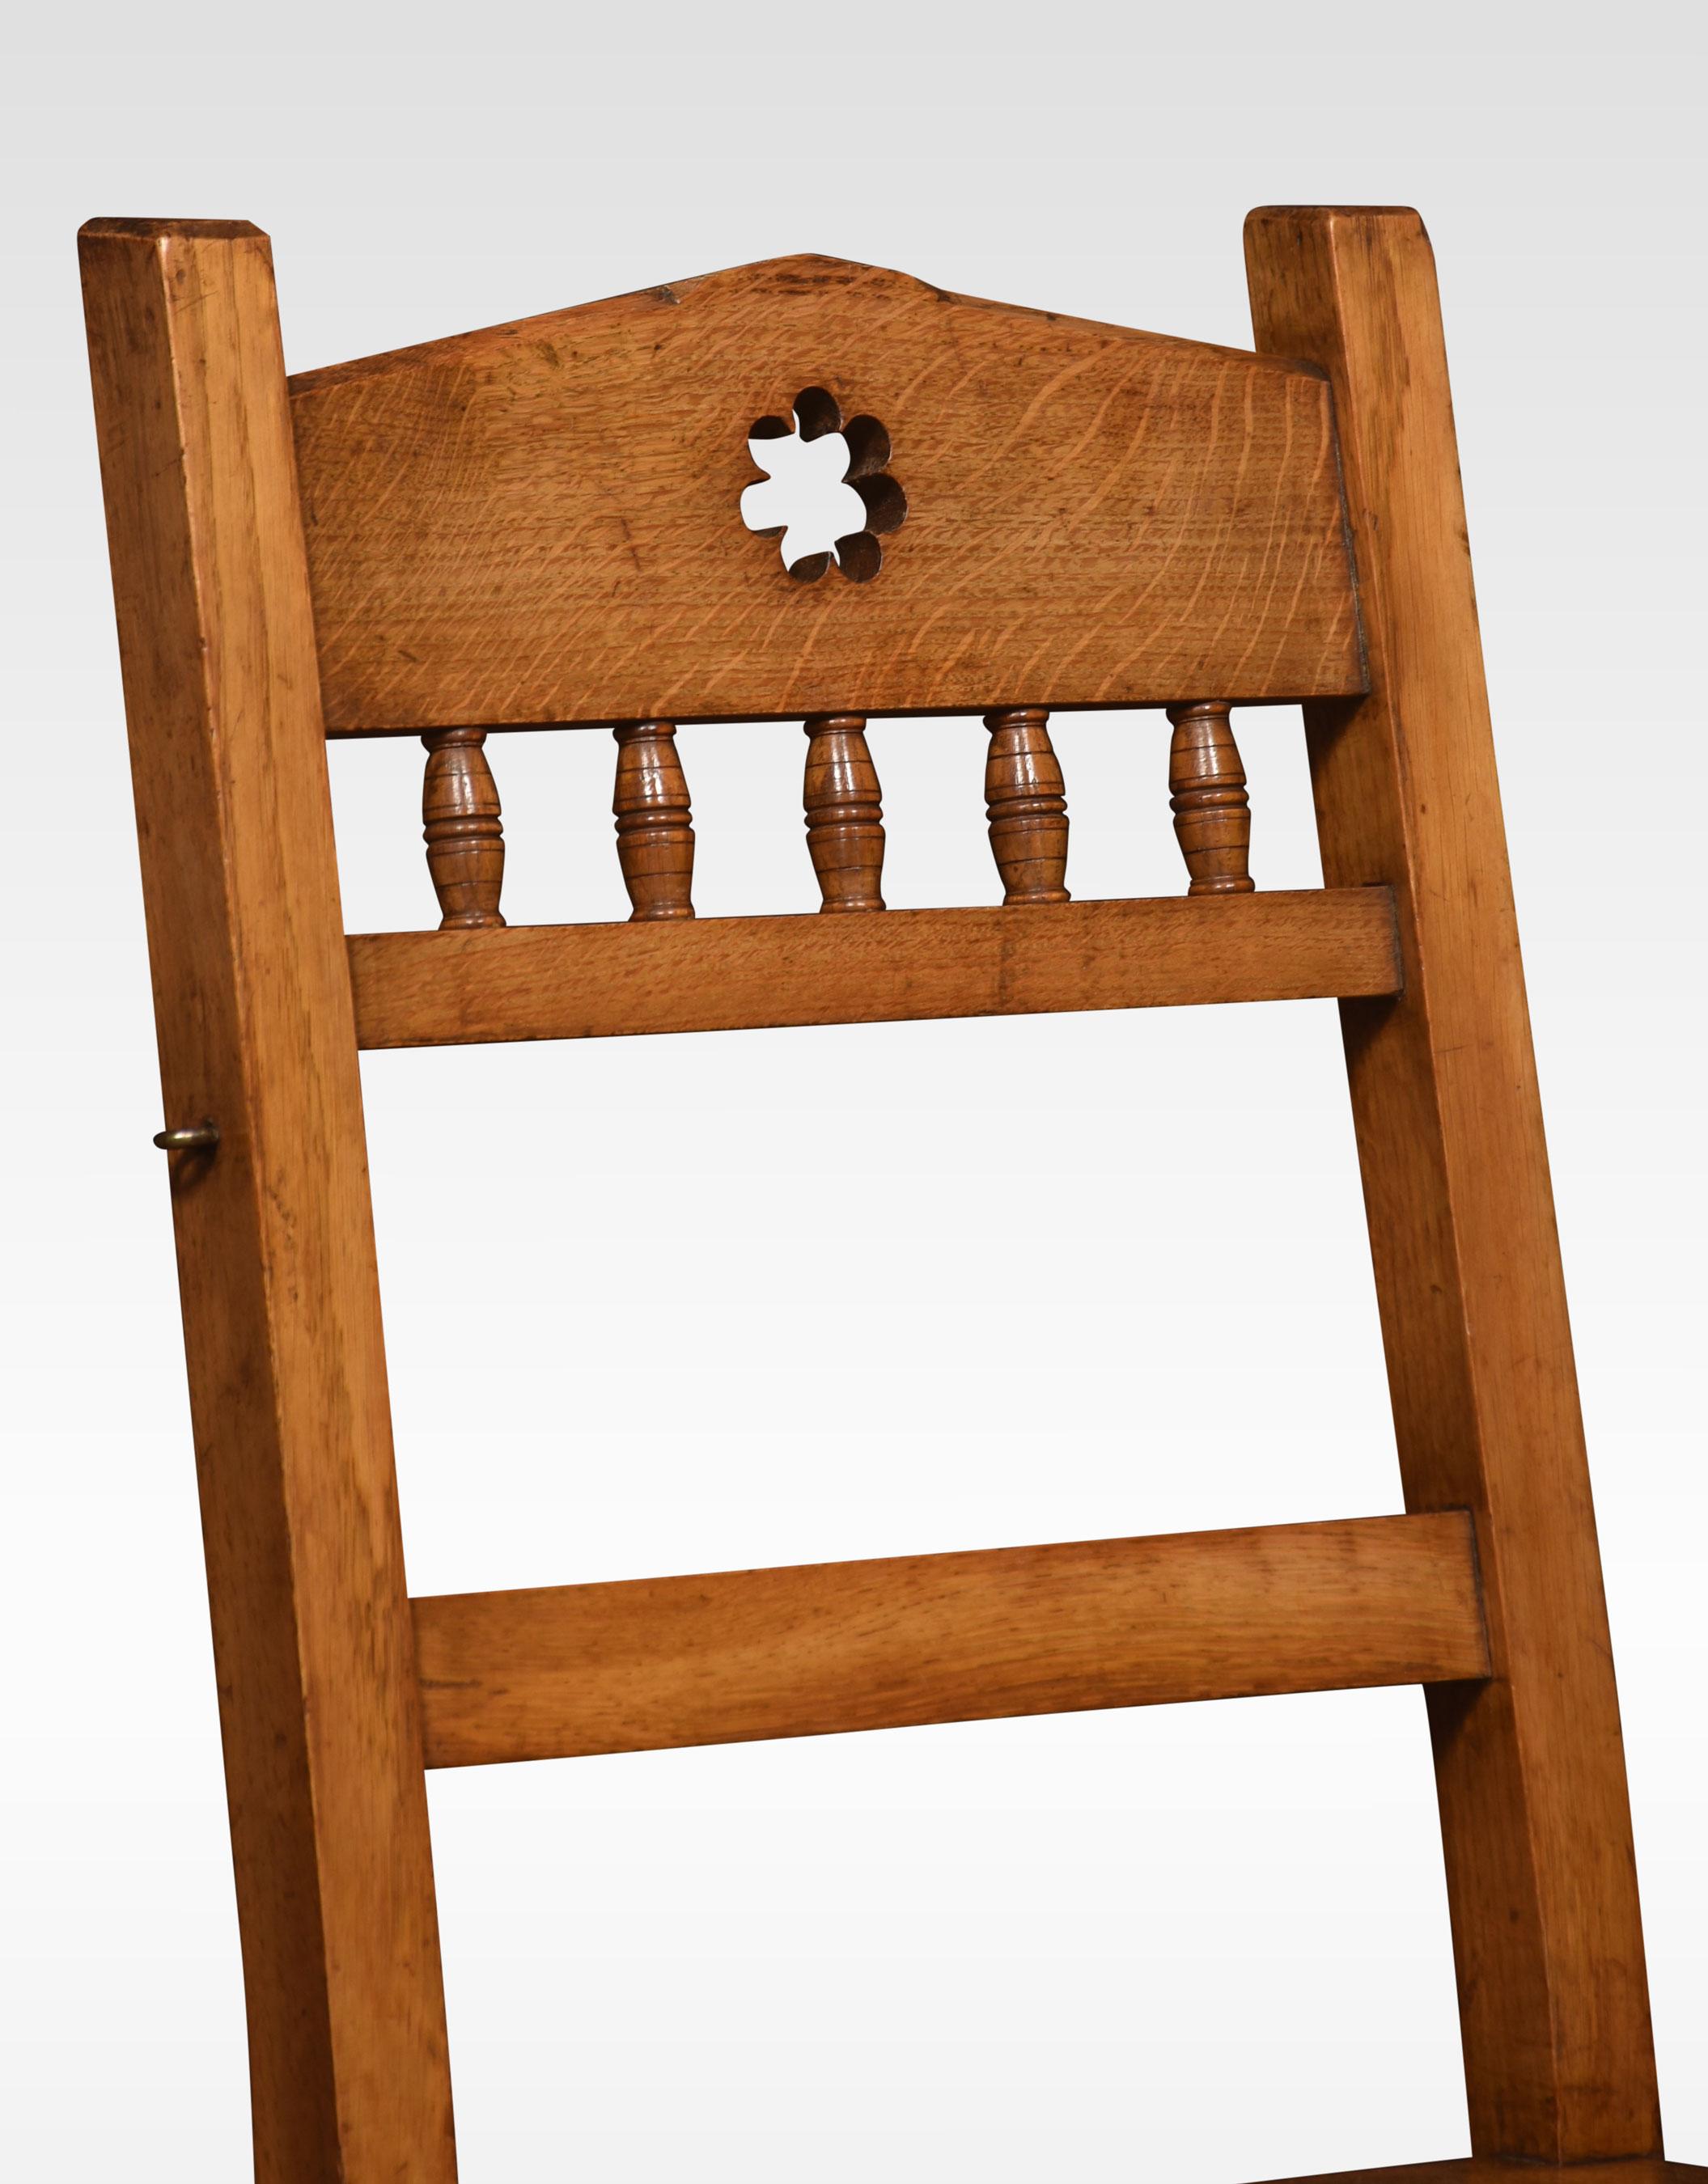 Chaise métamorphique en chêne du 19ème siècle, avec un dossier en fuseau au-dessus d'un siège solide, la chaise s'ouvre sur un ensemble robuste de marches de bibliothèque.
Dimensions
Hauteur 34.5 Inches hauteur au siège 17.5 Inches
Largeur 17